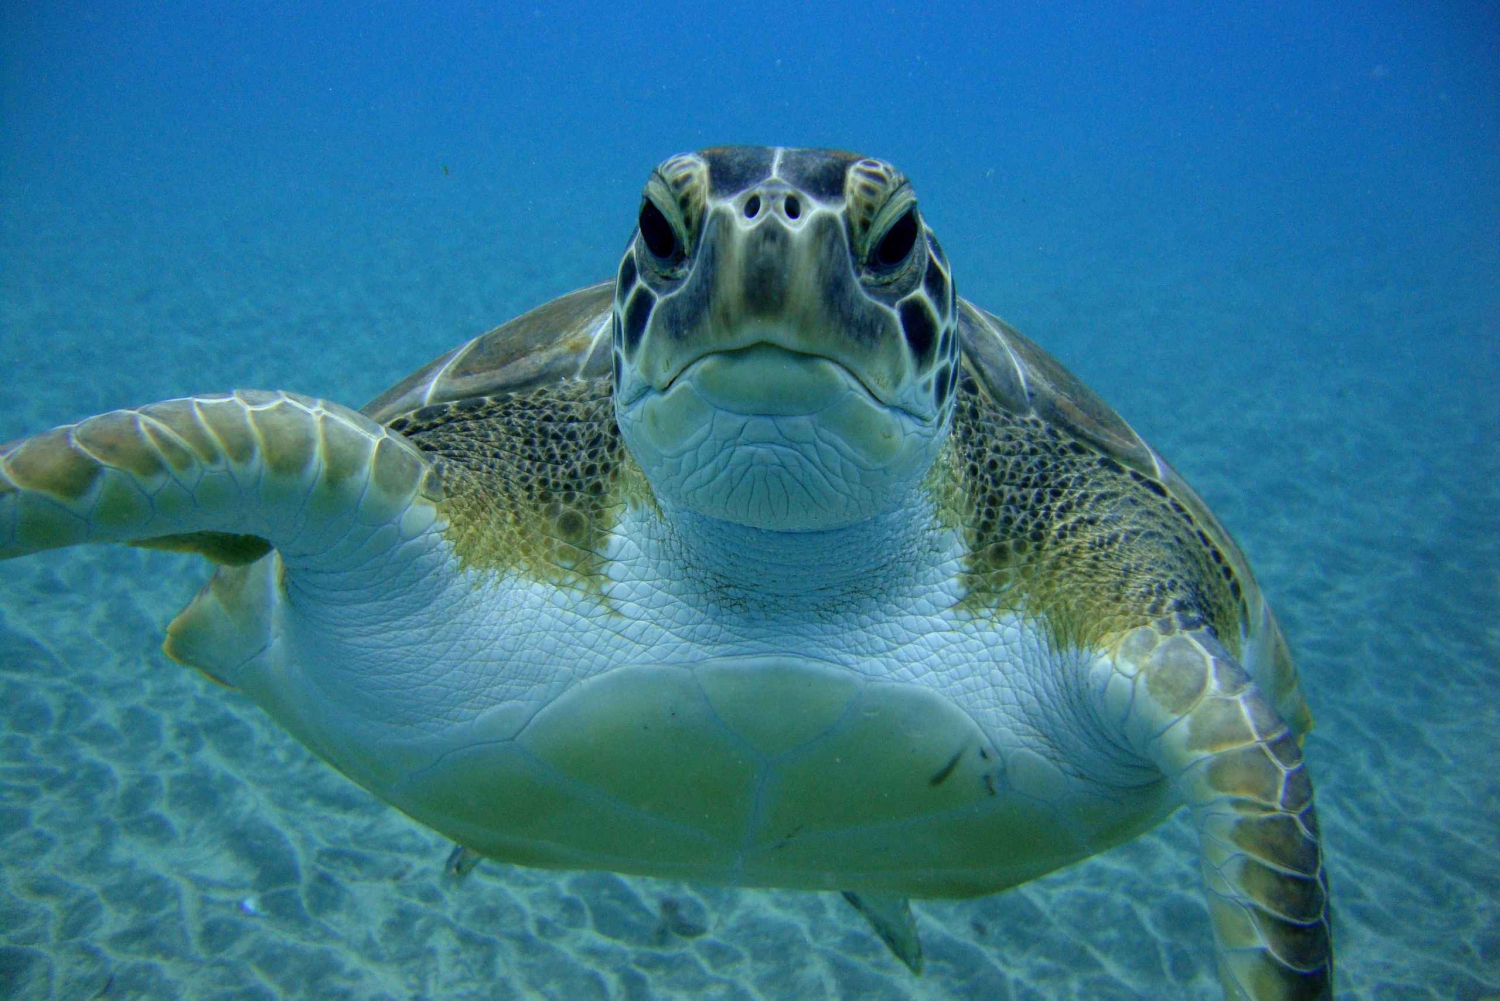  Snorkeling Trip with Turtles